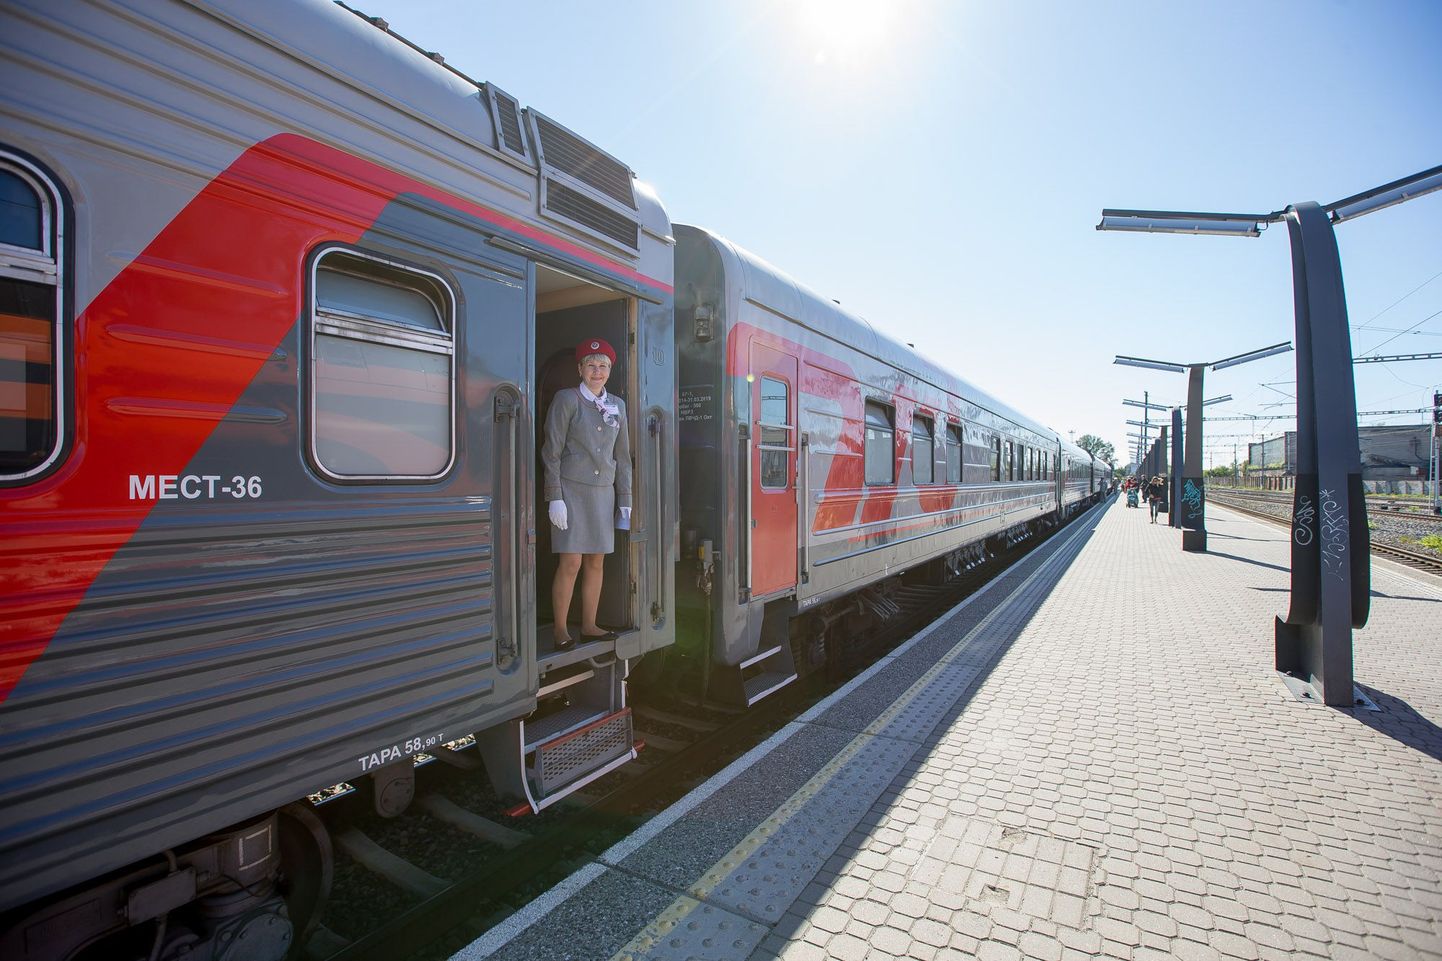 Tallinna-Peterburi-Moskva rongile saab homsest pileti lunastada ka läbi elektroonse piletimüügisüsteemi.